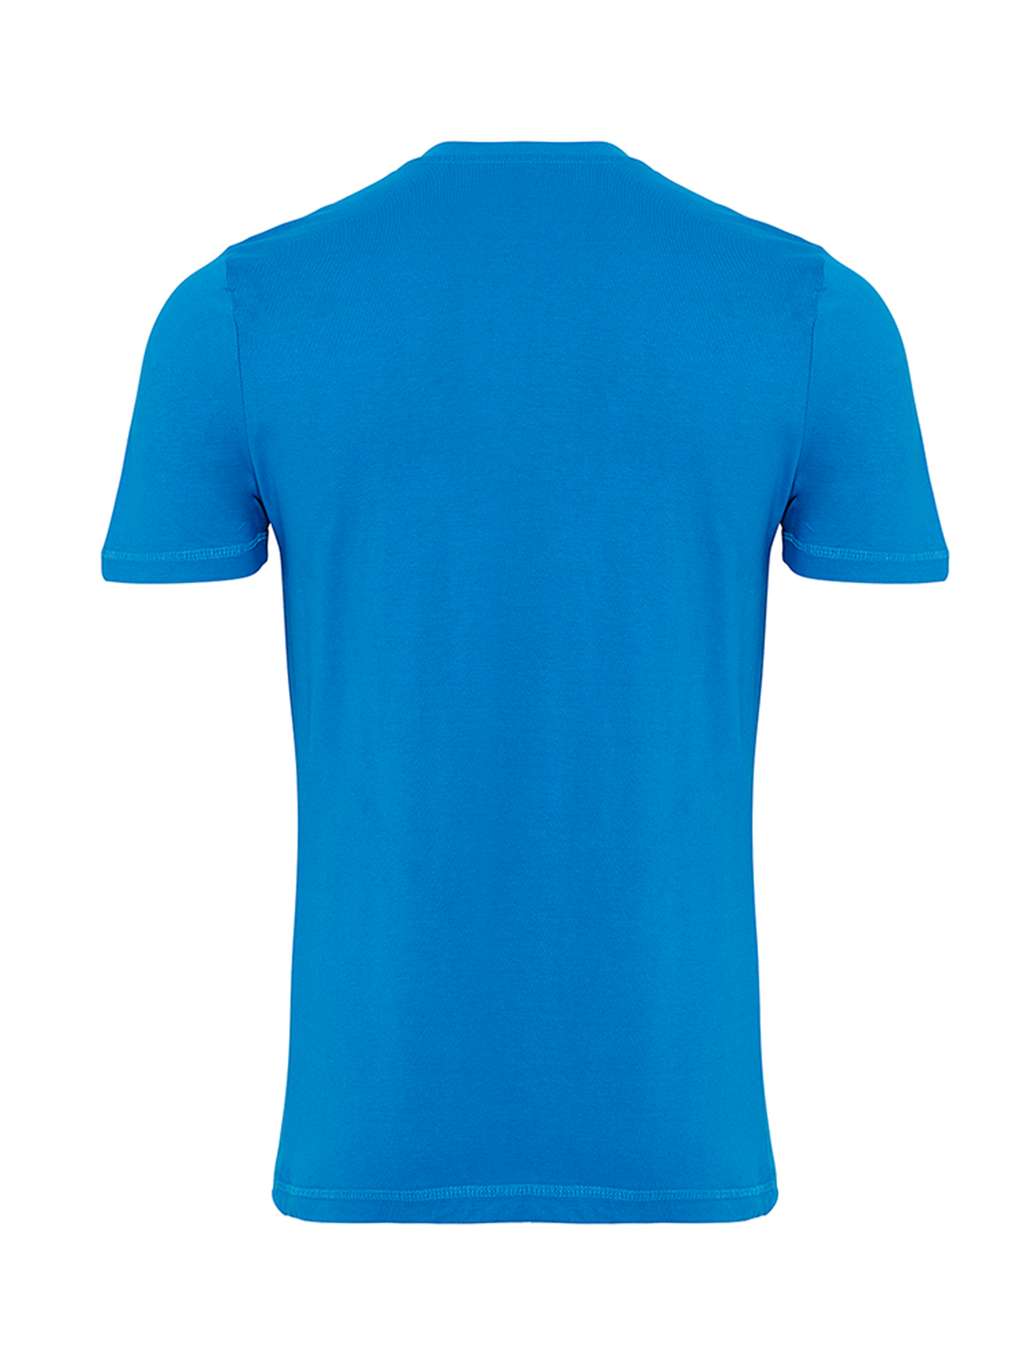 Økologisk Basic T-shirt - Turkis Blå